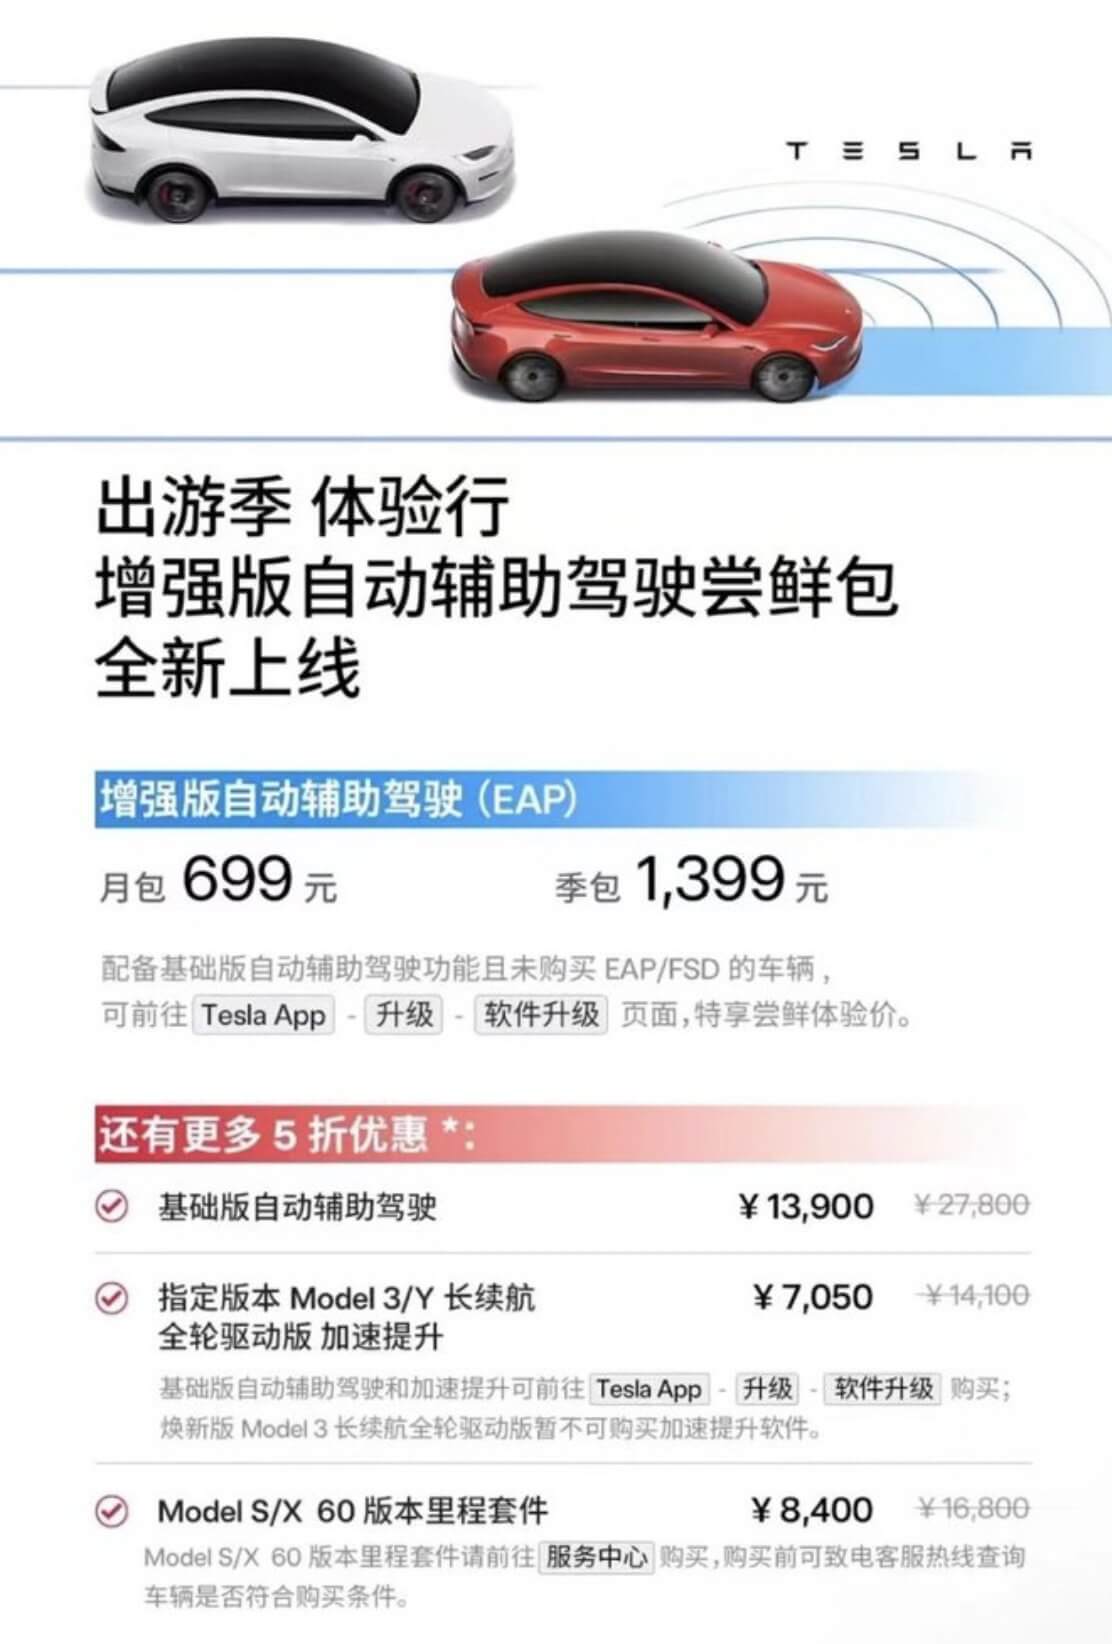 月包价格 699 元！特斯拉在中国推出 EAP 订阅服务